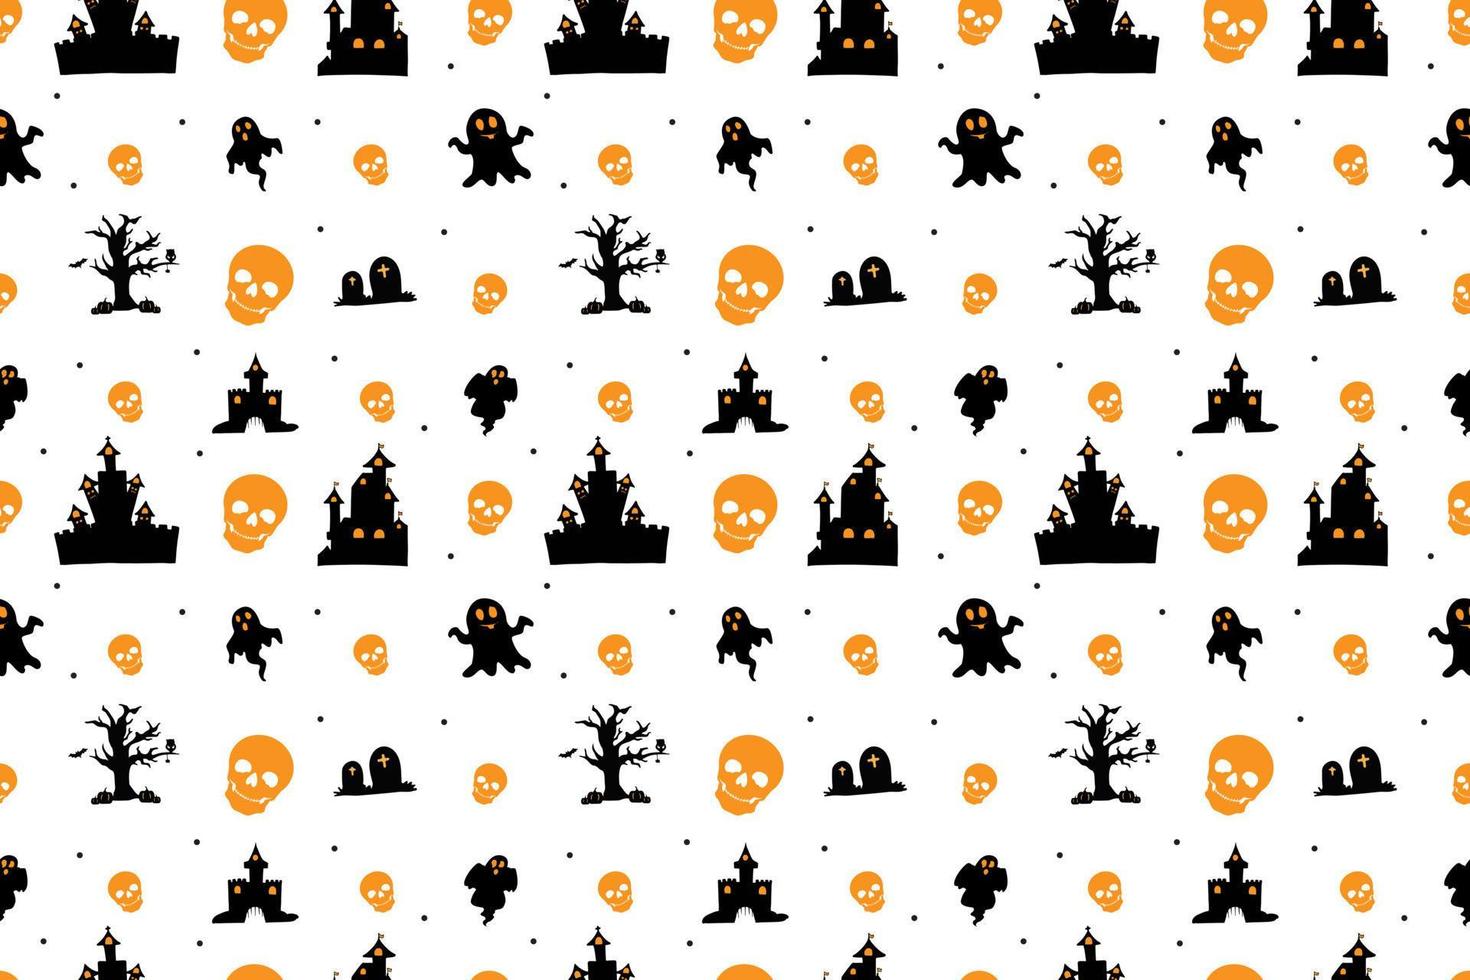 Halloween naadloos patroonontwerp vector